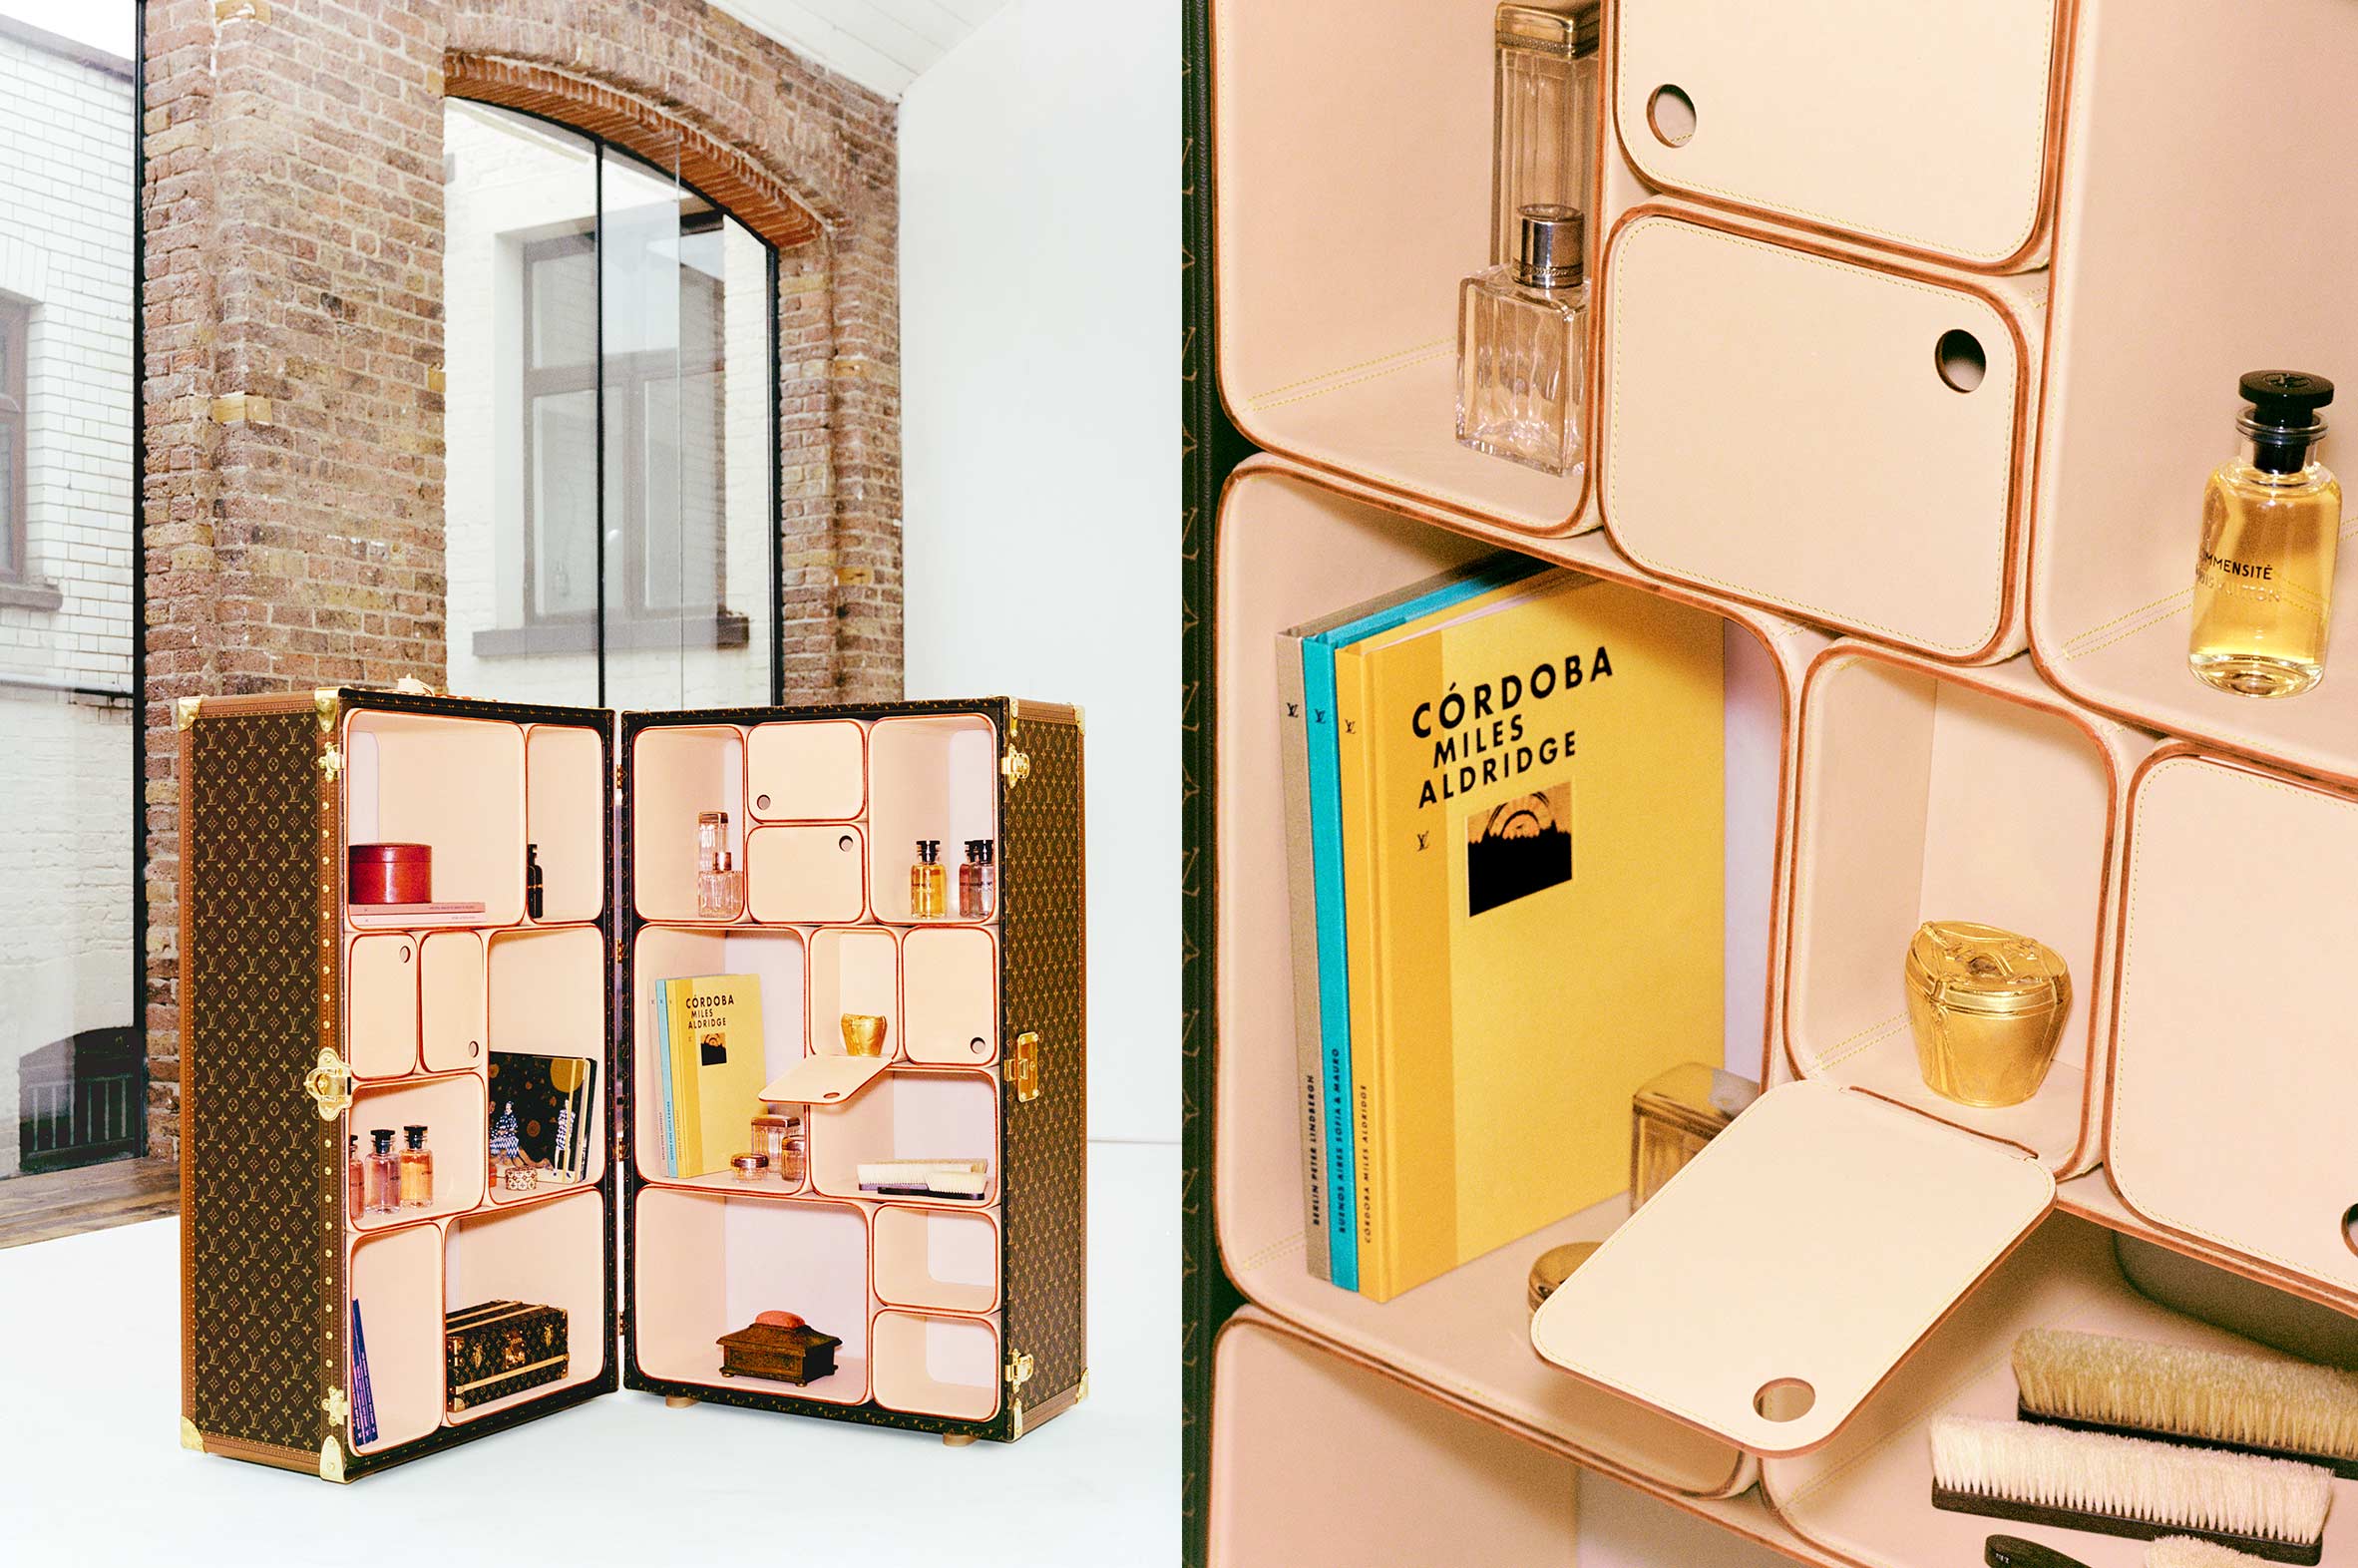 Marc Newson Transforms the Iconic Louis Vuitton Trunk Into a Décor Piece de  Resistance - S/ magazine